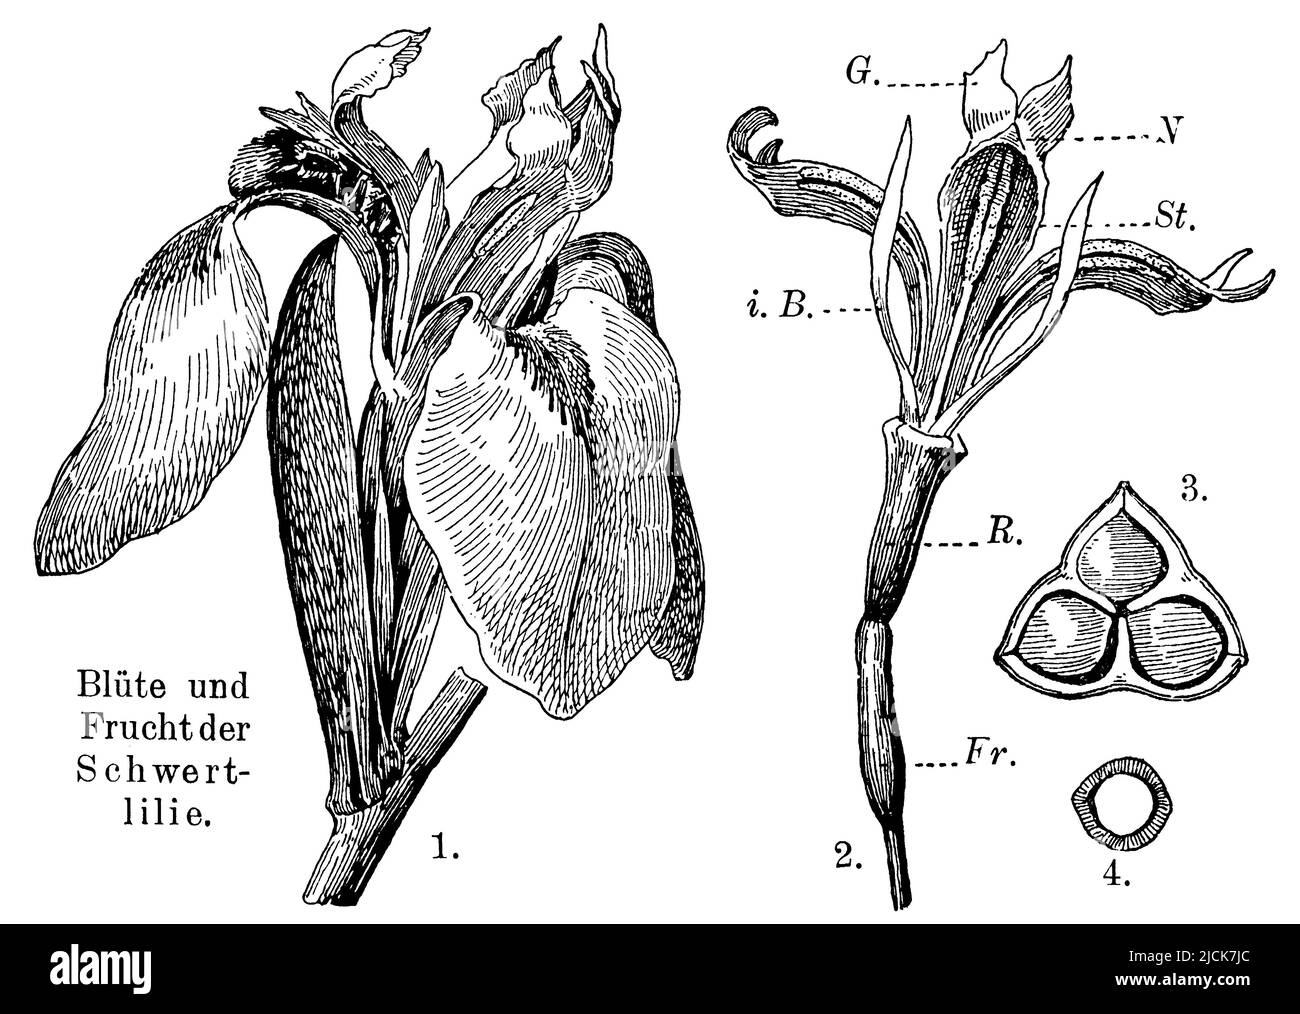 bandiera gialla 1. fiore visitato da ape bumble con bratte e labellum, 2. fiore dopo rimozione di foglie esterne involucre. Tubo R., p. ovaio, I.B. foglie di cerchio interno, G. pistil, Sant'antera, N. stigma, 3. Frutta, 4. Seed., Iris pseudacorus, anonym (libro di botanica, 1909), Sumpf-Schwertlilie 1. Von Hummel besuchte Blüte mit Hüllblättern und Lablatt, 2. Blüte nach Entfernung der äußeren Blätter der Blütenhülle. R. Röhre, p. Fruchtnoden, I.B. Blätter des inneren Kreises, G. Griffel, St. Staubbeutel, N. Narbe, 3. Frucht, 4. Stesso, Iris des Marais 1. fleur visitée par le bourdon avec bractées et lamelle Foto Stock